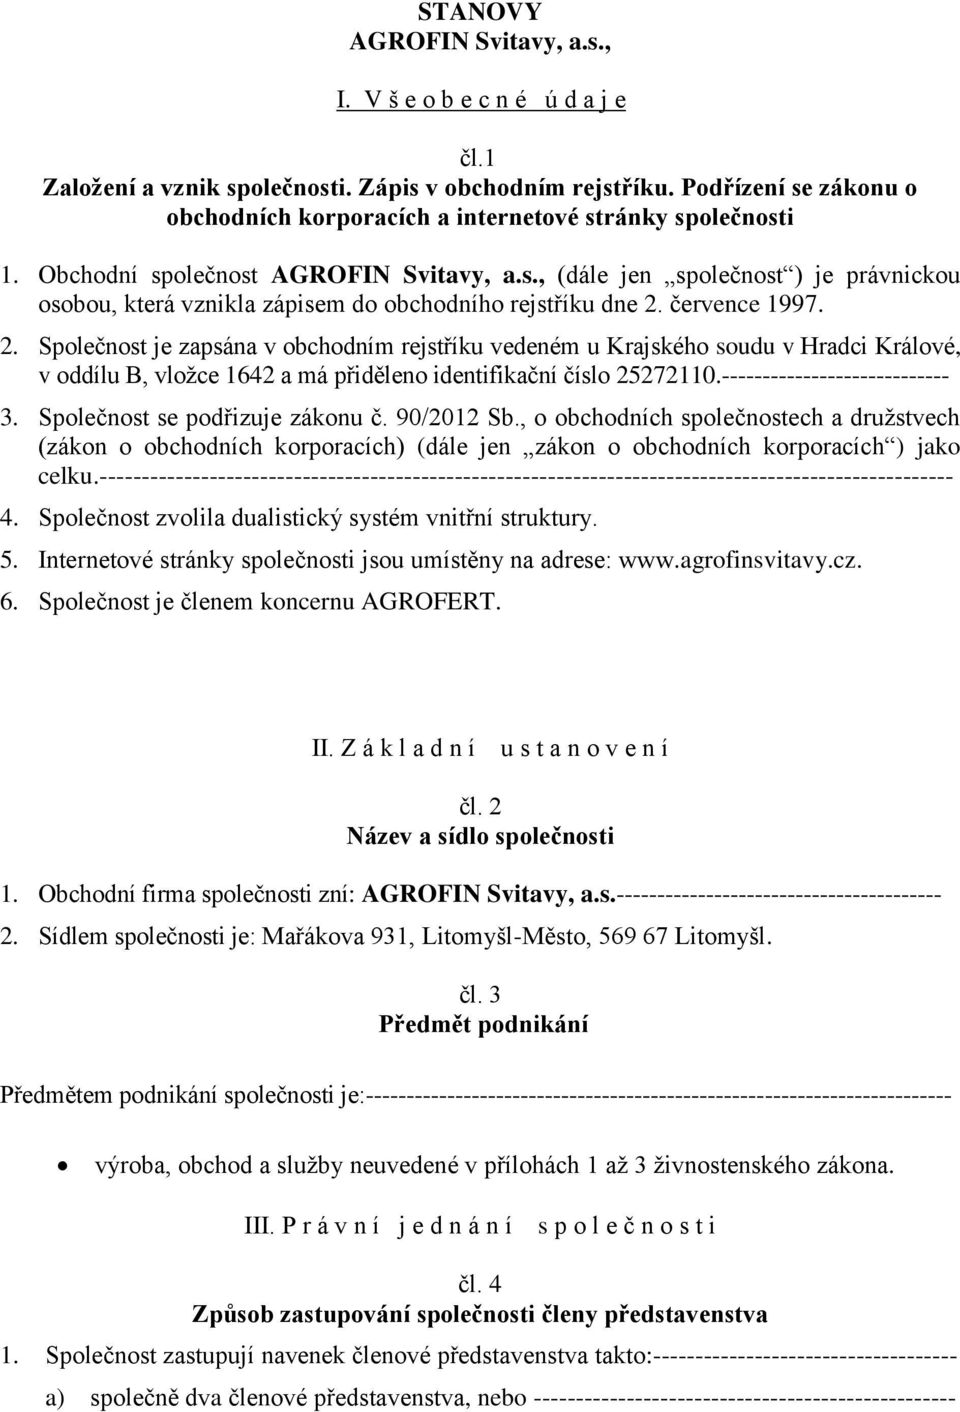 července 1997. 2. Společnost je zapsána v obchodním rejstříku vedeném u Krajského soudu v Hradci Králové, v oddílu B, vložce 1642 a má přiděleno identifikační číslo 25272110.